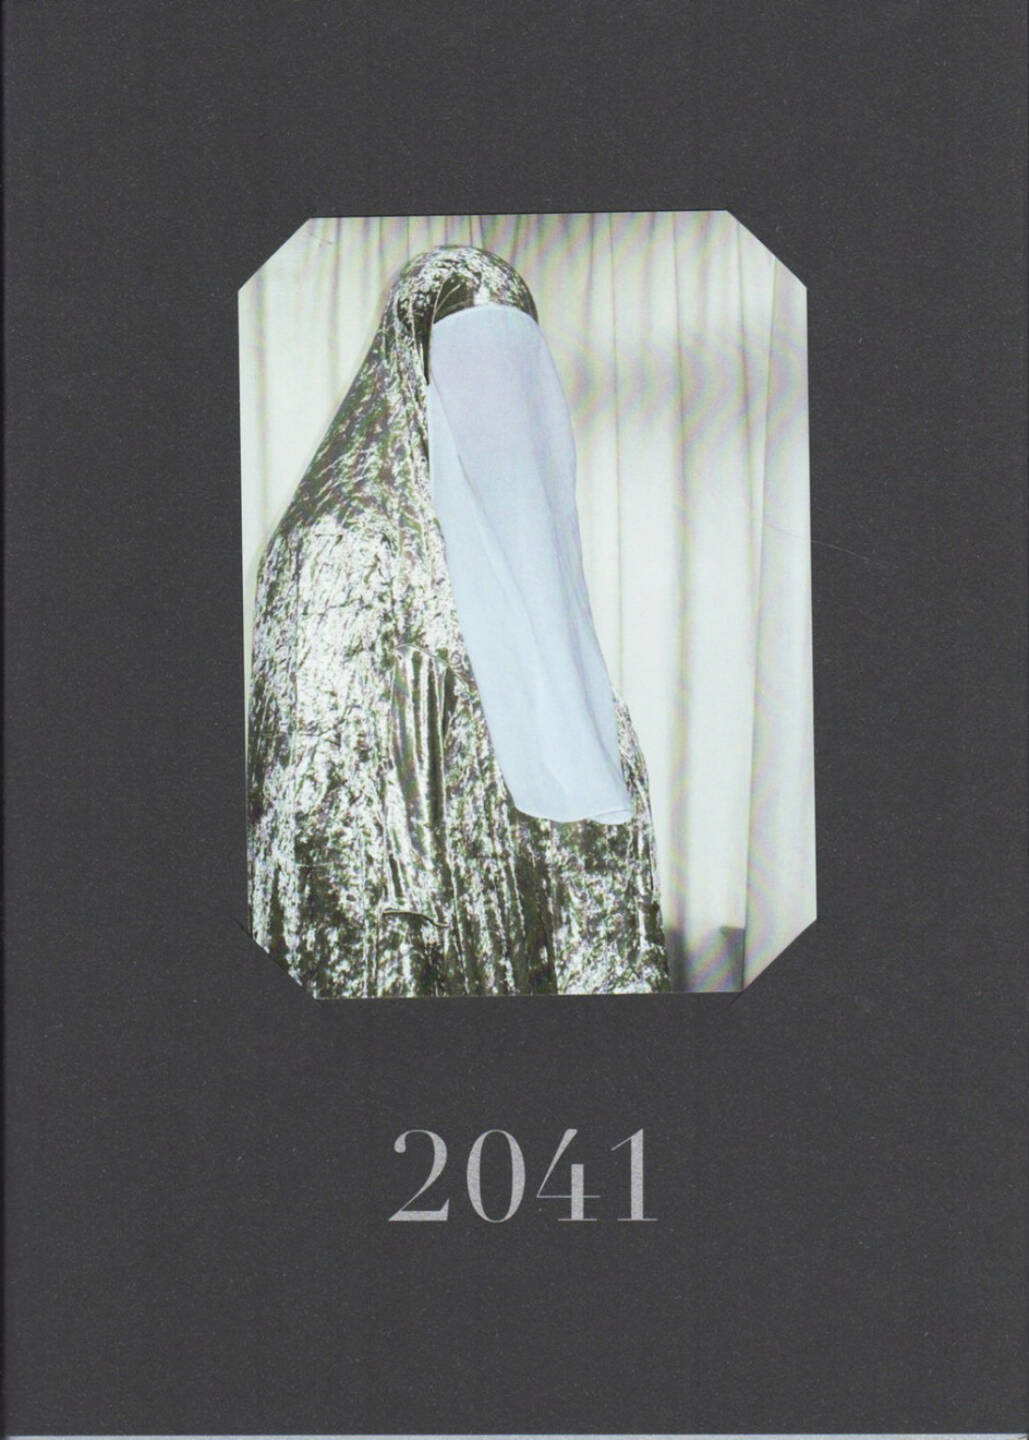 2041 - 2041, Here Press 2014, Cover - http://josefchladek.com/book/2041_-_2041